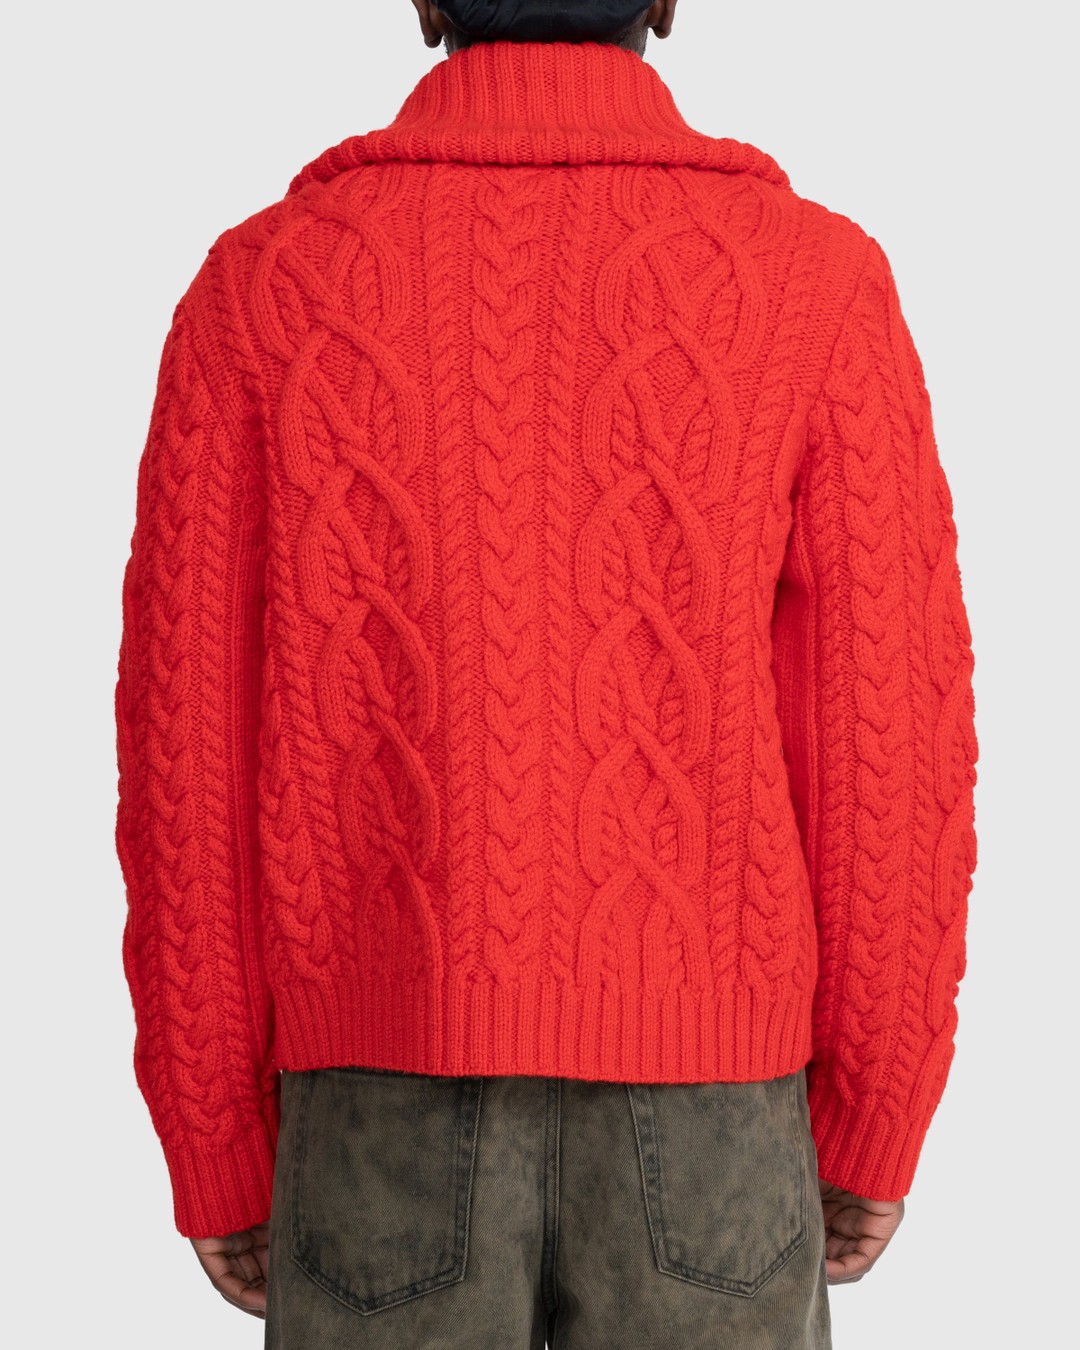 Dries van Noten – Naldo Cardigan Red - Knitwear - Red - Image 4